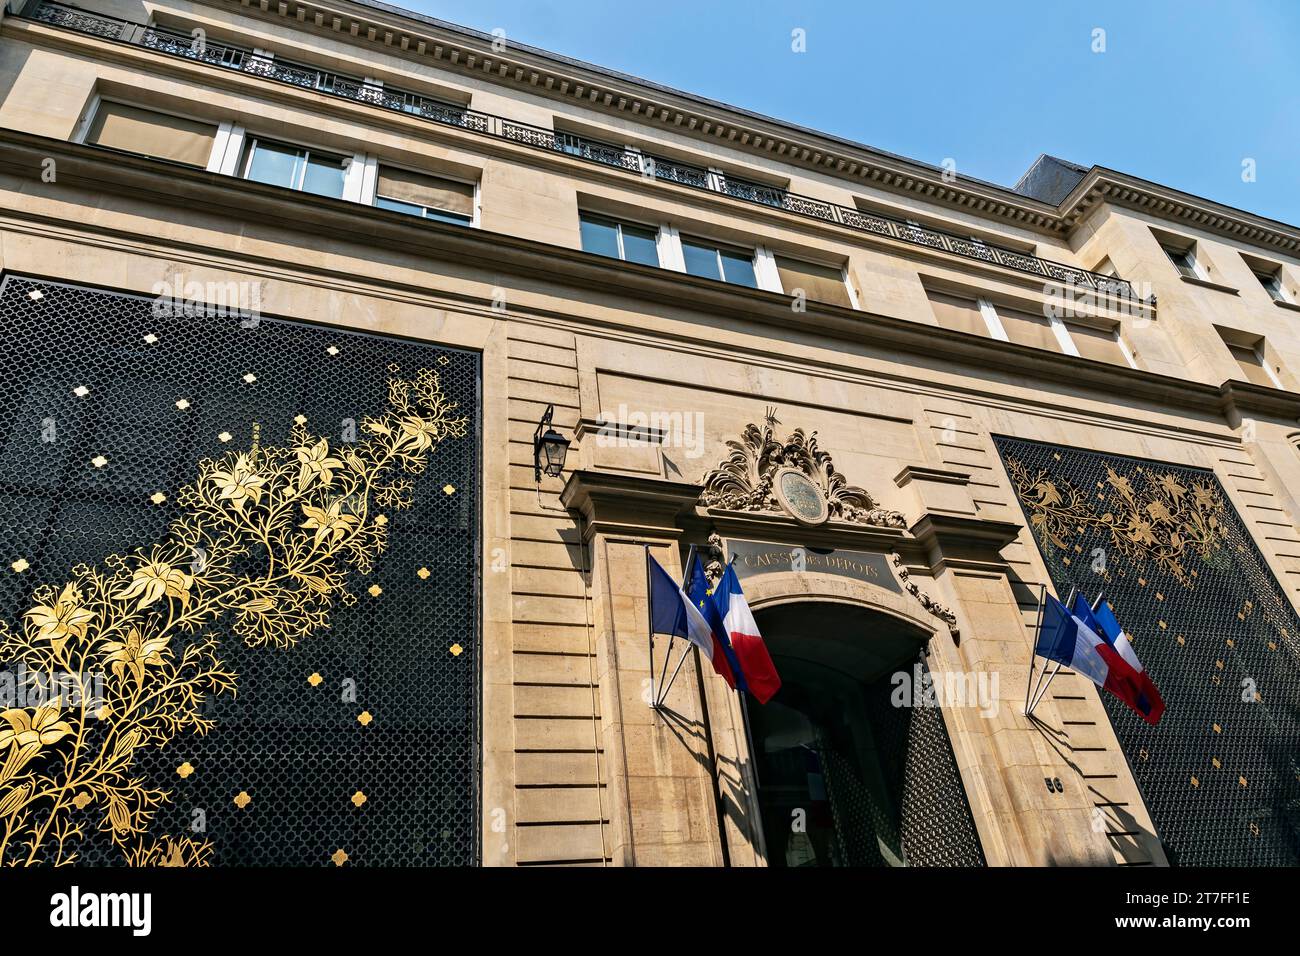 Hauptsitz der Caisse des Depots et Consignations (Einlagenfonds). Französisches öffentliches Finanzinstitut. Bank. Paris, Frankreich, Europa, EU Stockfoto